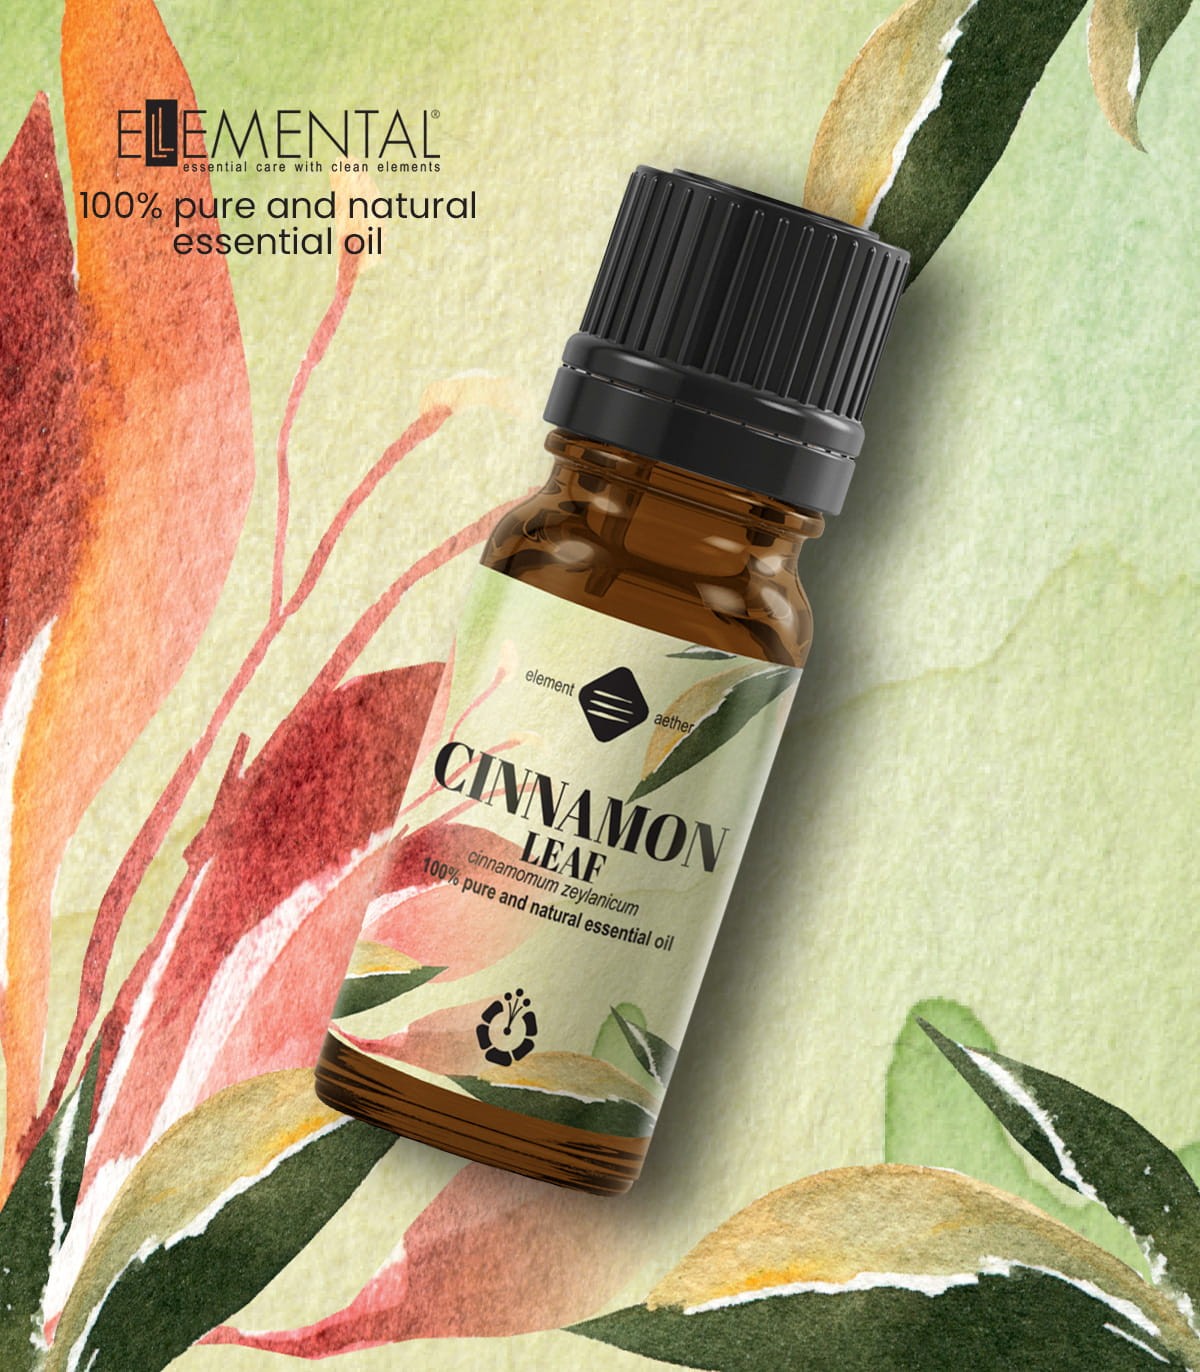 Cinnamon, pure essential oil (cinnamomum zeylanicum)